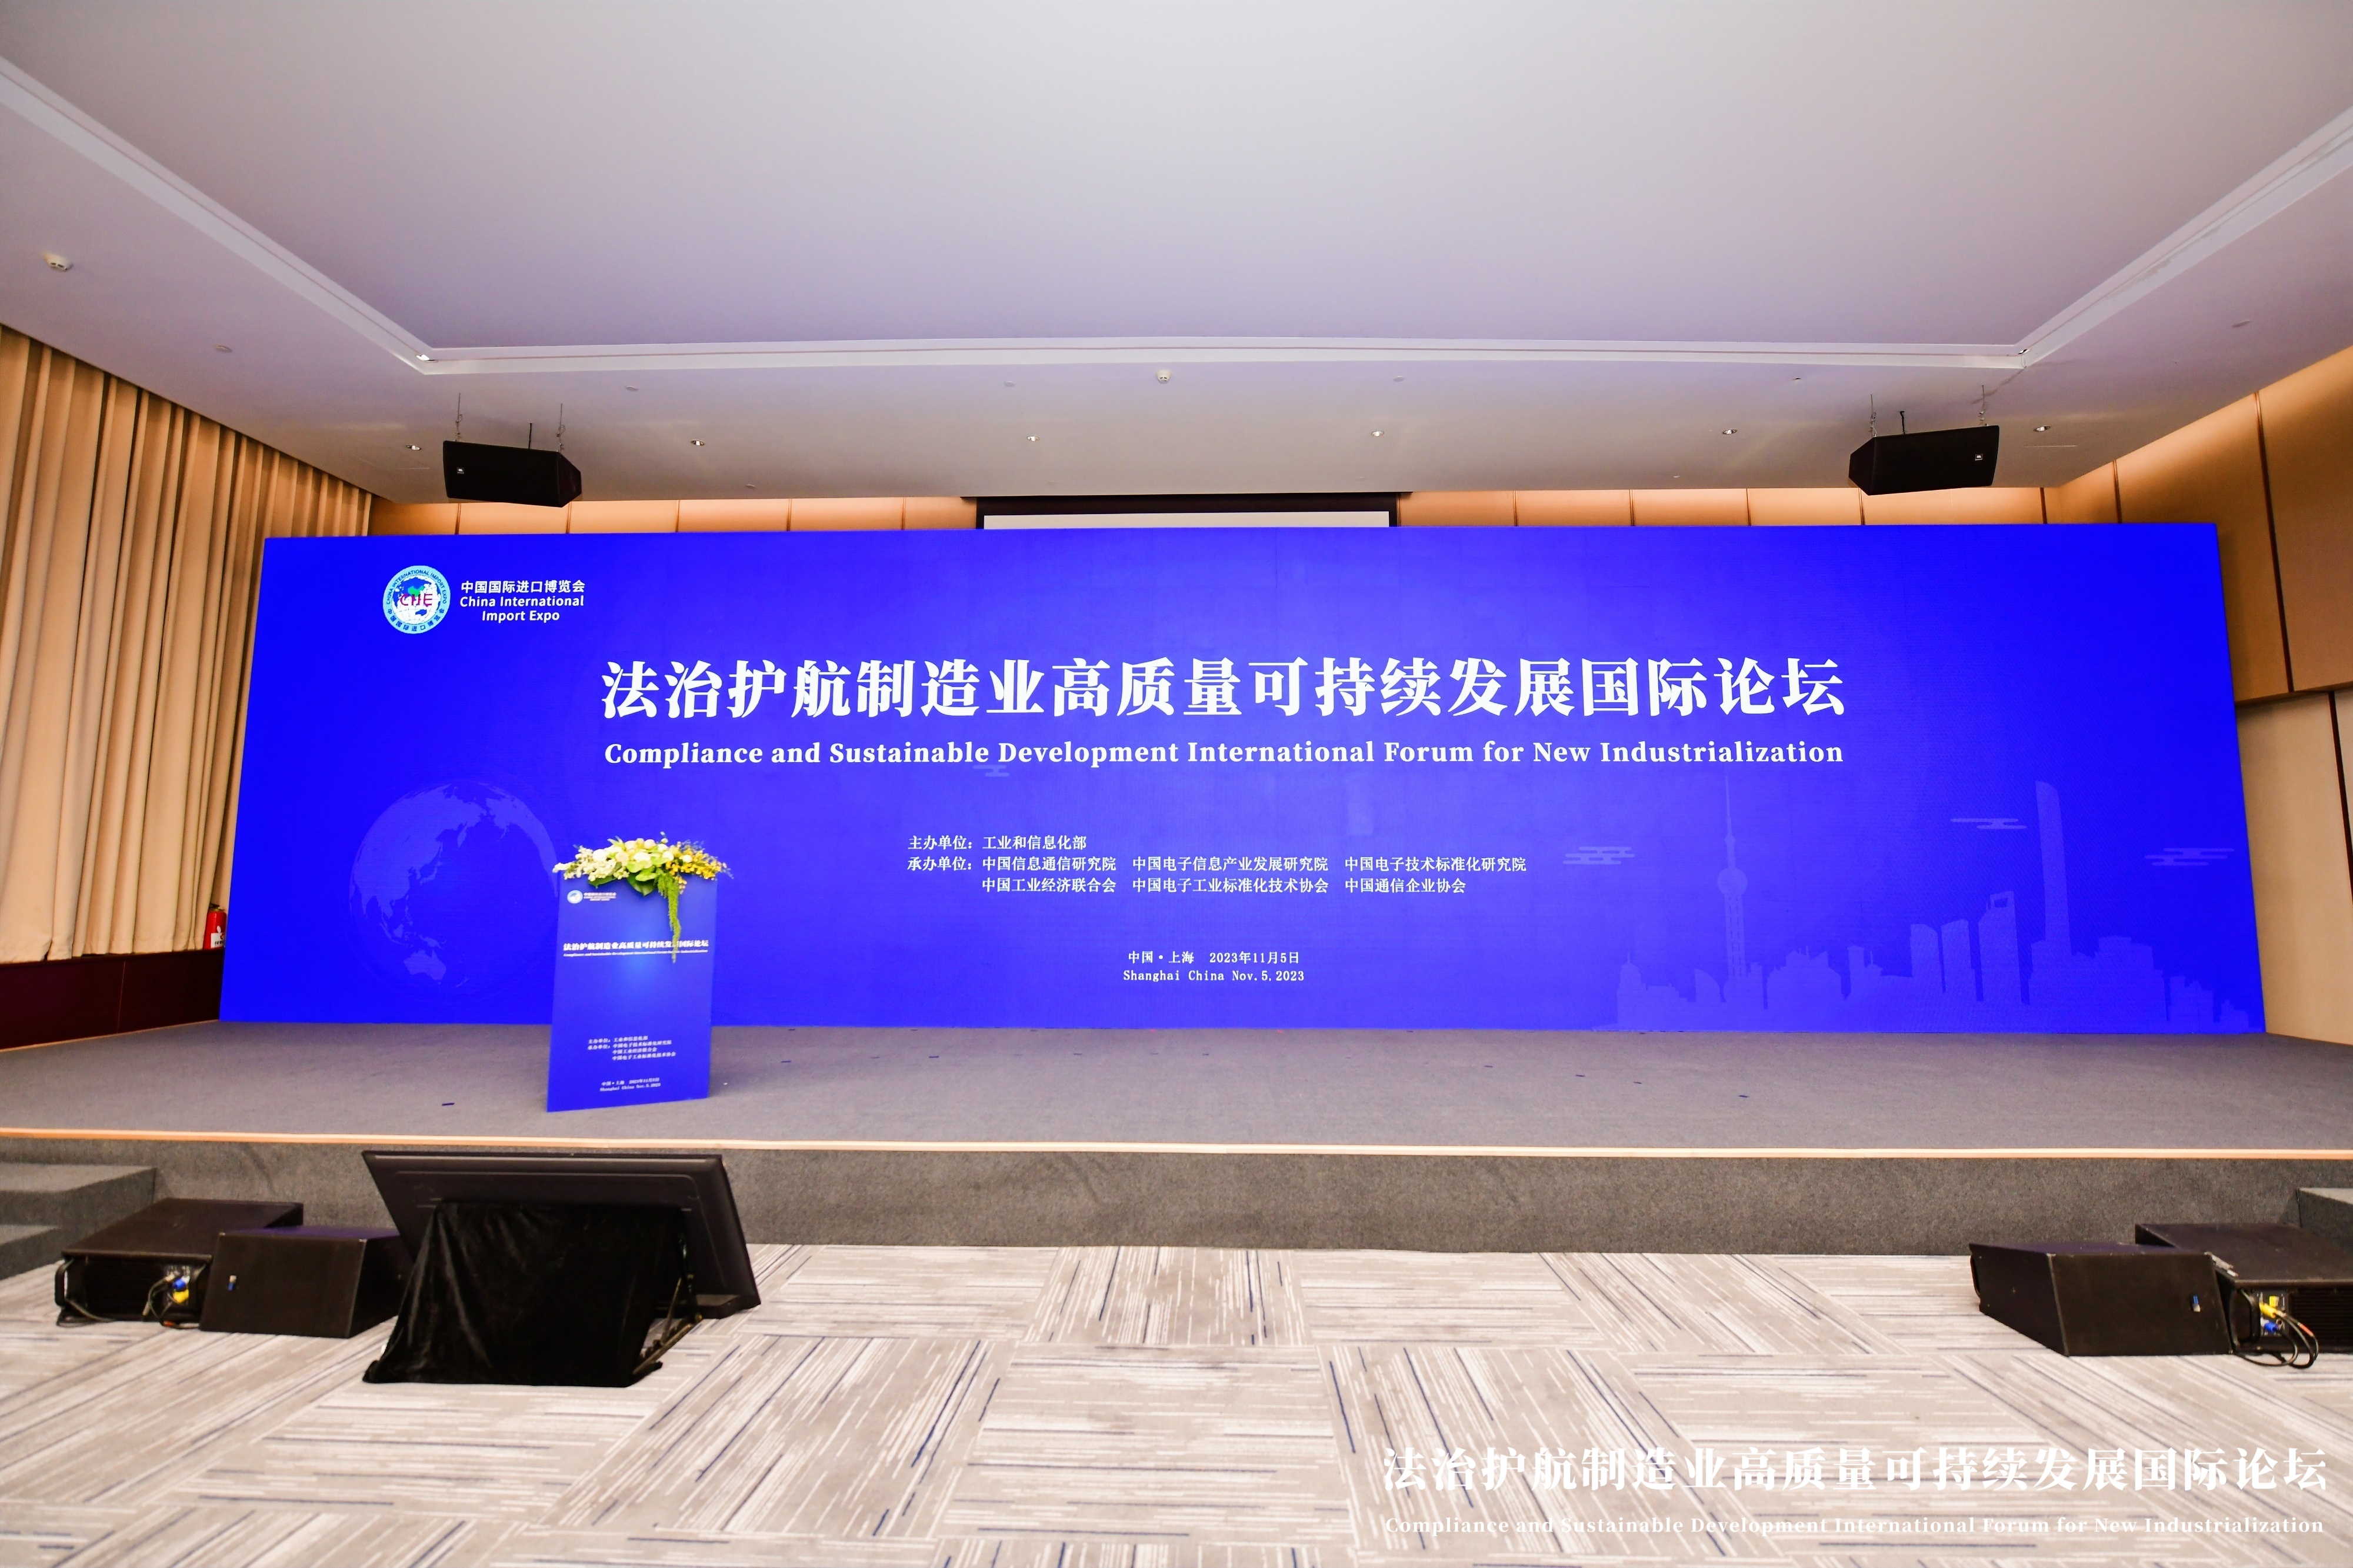 祝贺第六届中国进博会“法治护航制造业高质量可持续发展国际论坛”会议活动圆满落幕